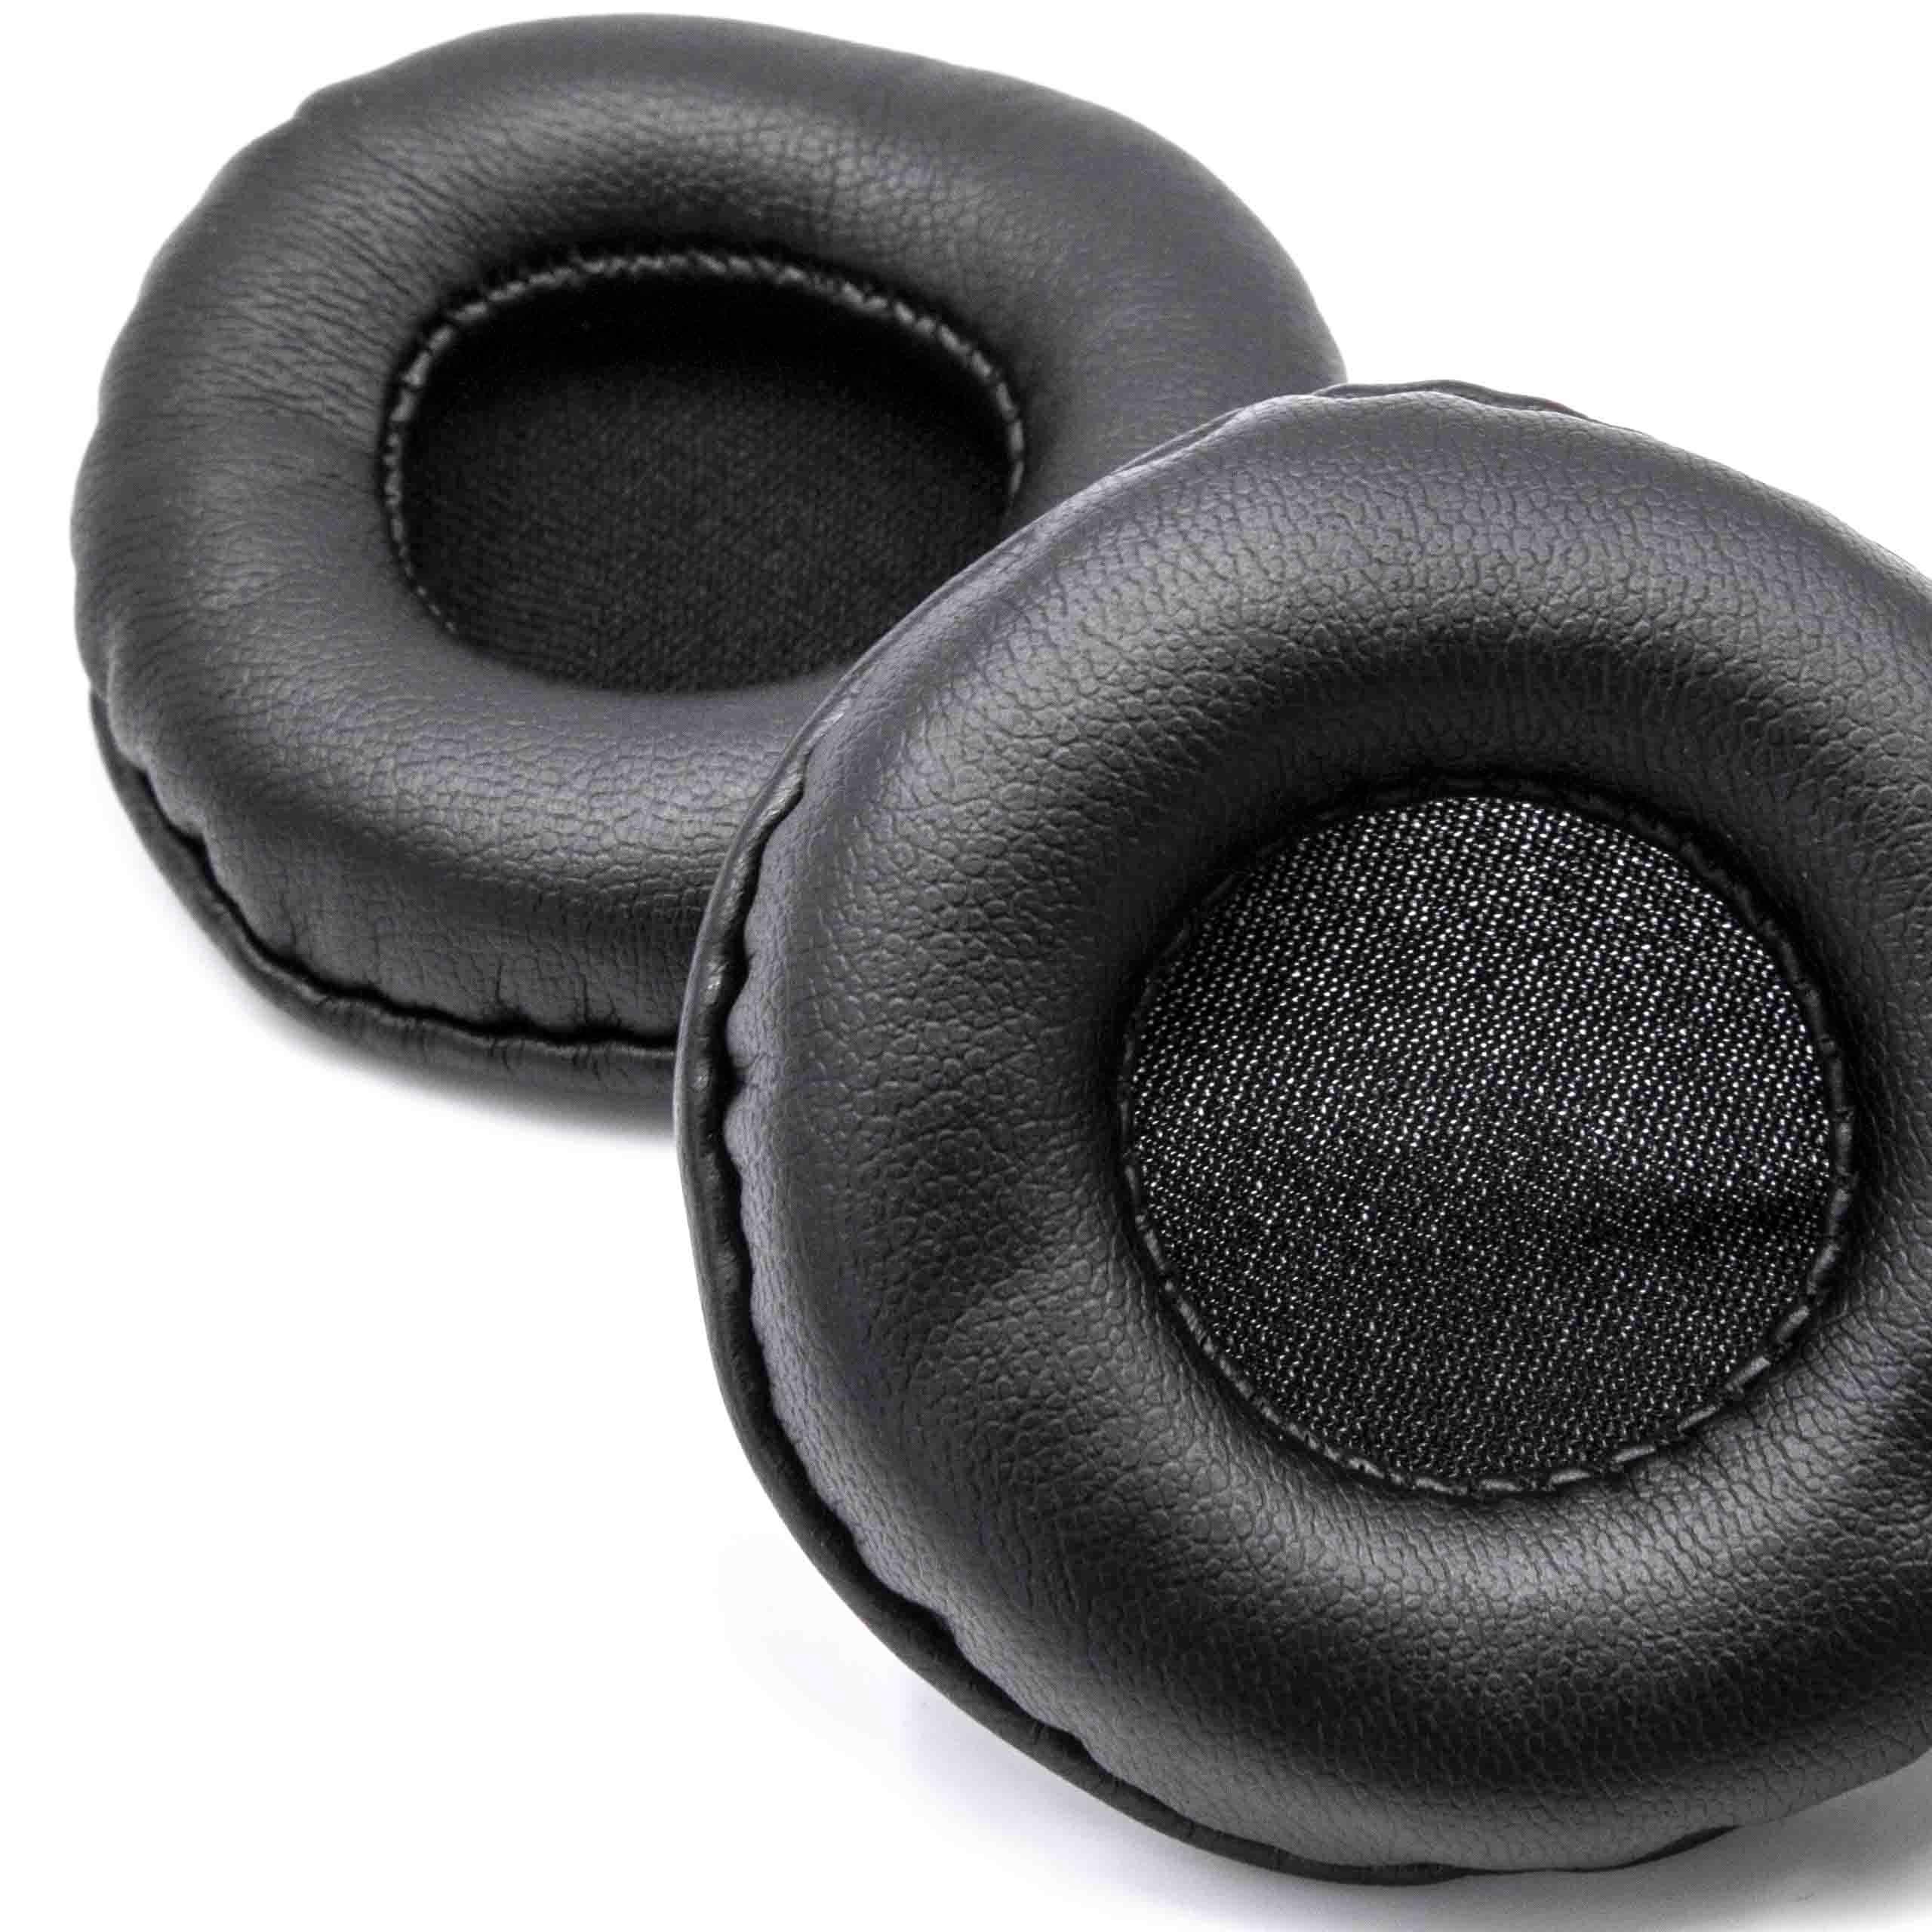 2x Poduszki do słuchawek ATH / słuchawek z nausznikami 60 mm / Sony ES55 - pady śr. 60 cm , czarny